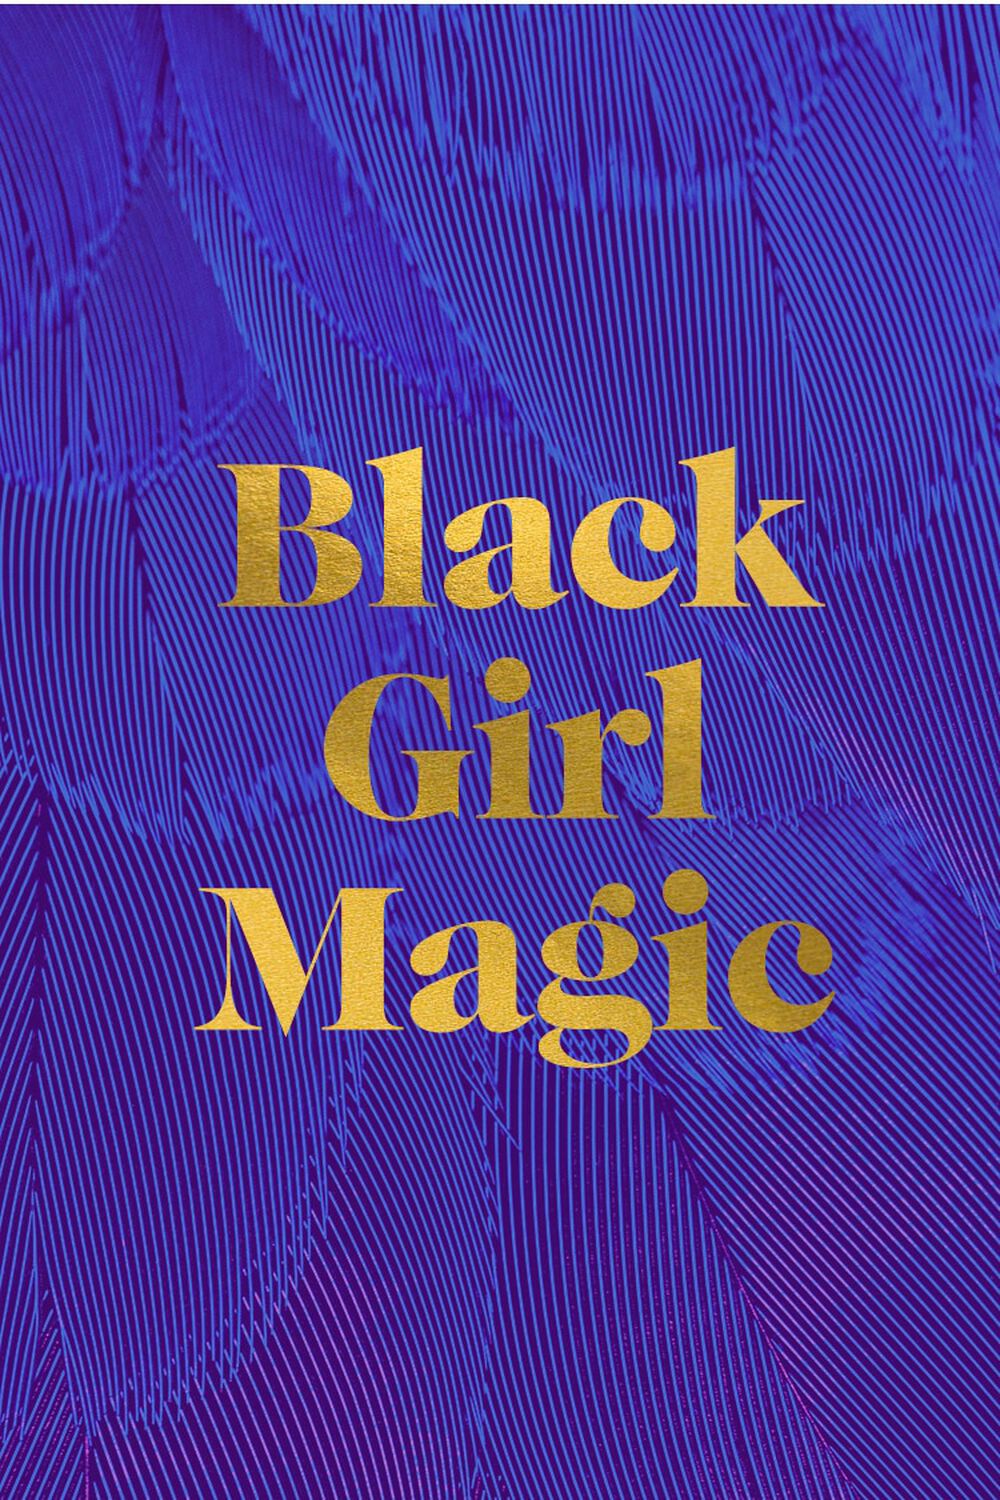 BLACK GIRL MAGIC  Forever 21 E-Gift Certificate, image 1